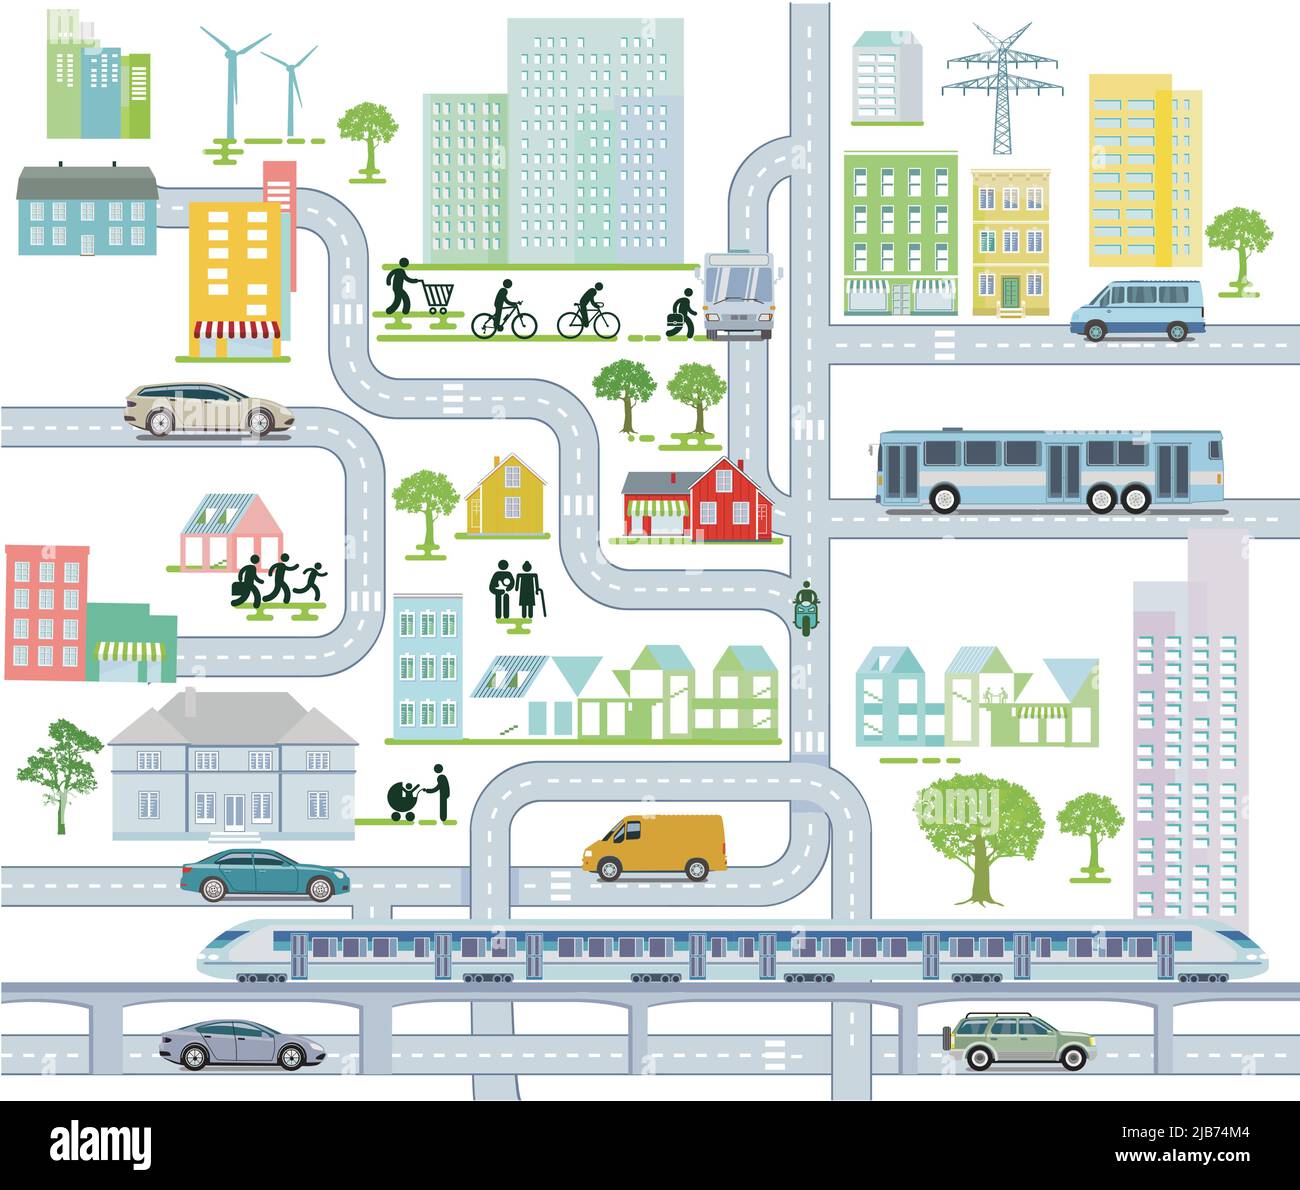 Stadtplan mit Straßenverkehr und Häusern, Informationsdarstellung Stock Vektor